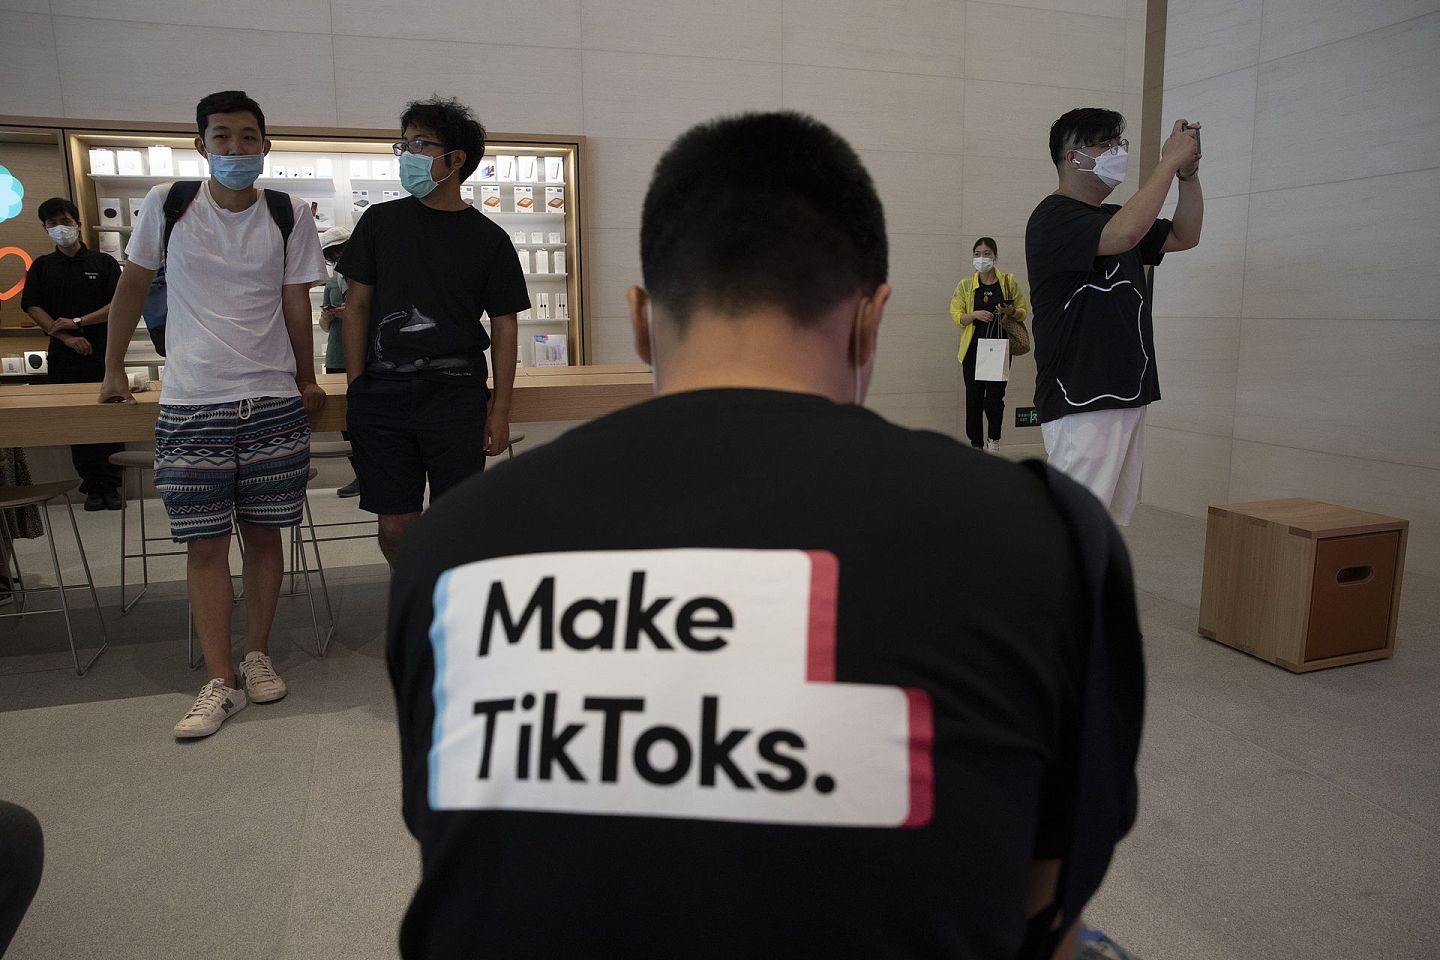 美国“封杀”TikTok：短片分享应用程式TikTok最近成为中美角力中备受冲击的对象。2019年美国已就其母公司字节跳动收购美国社交应用程式Muscial.ly对国家安全影响进行检视。图为7月17日一名男子穿上宣传TikTok字句的汗衫，坐在位于北京的苹果公司门市内。